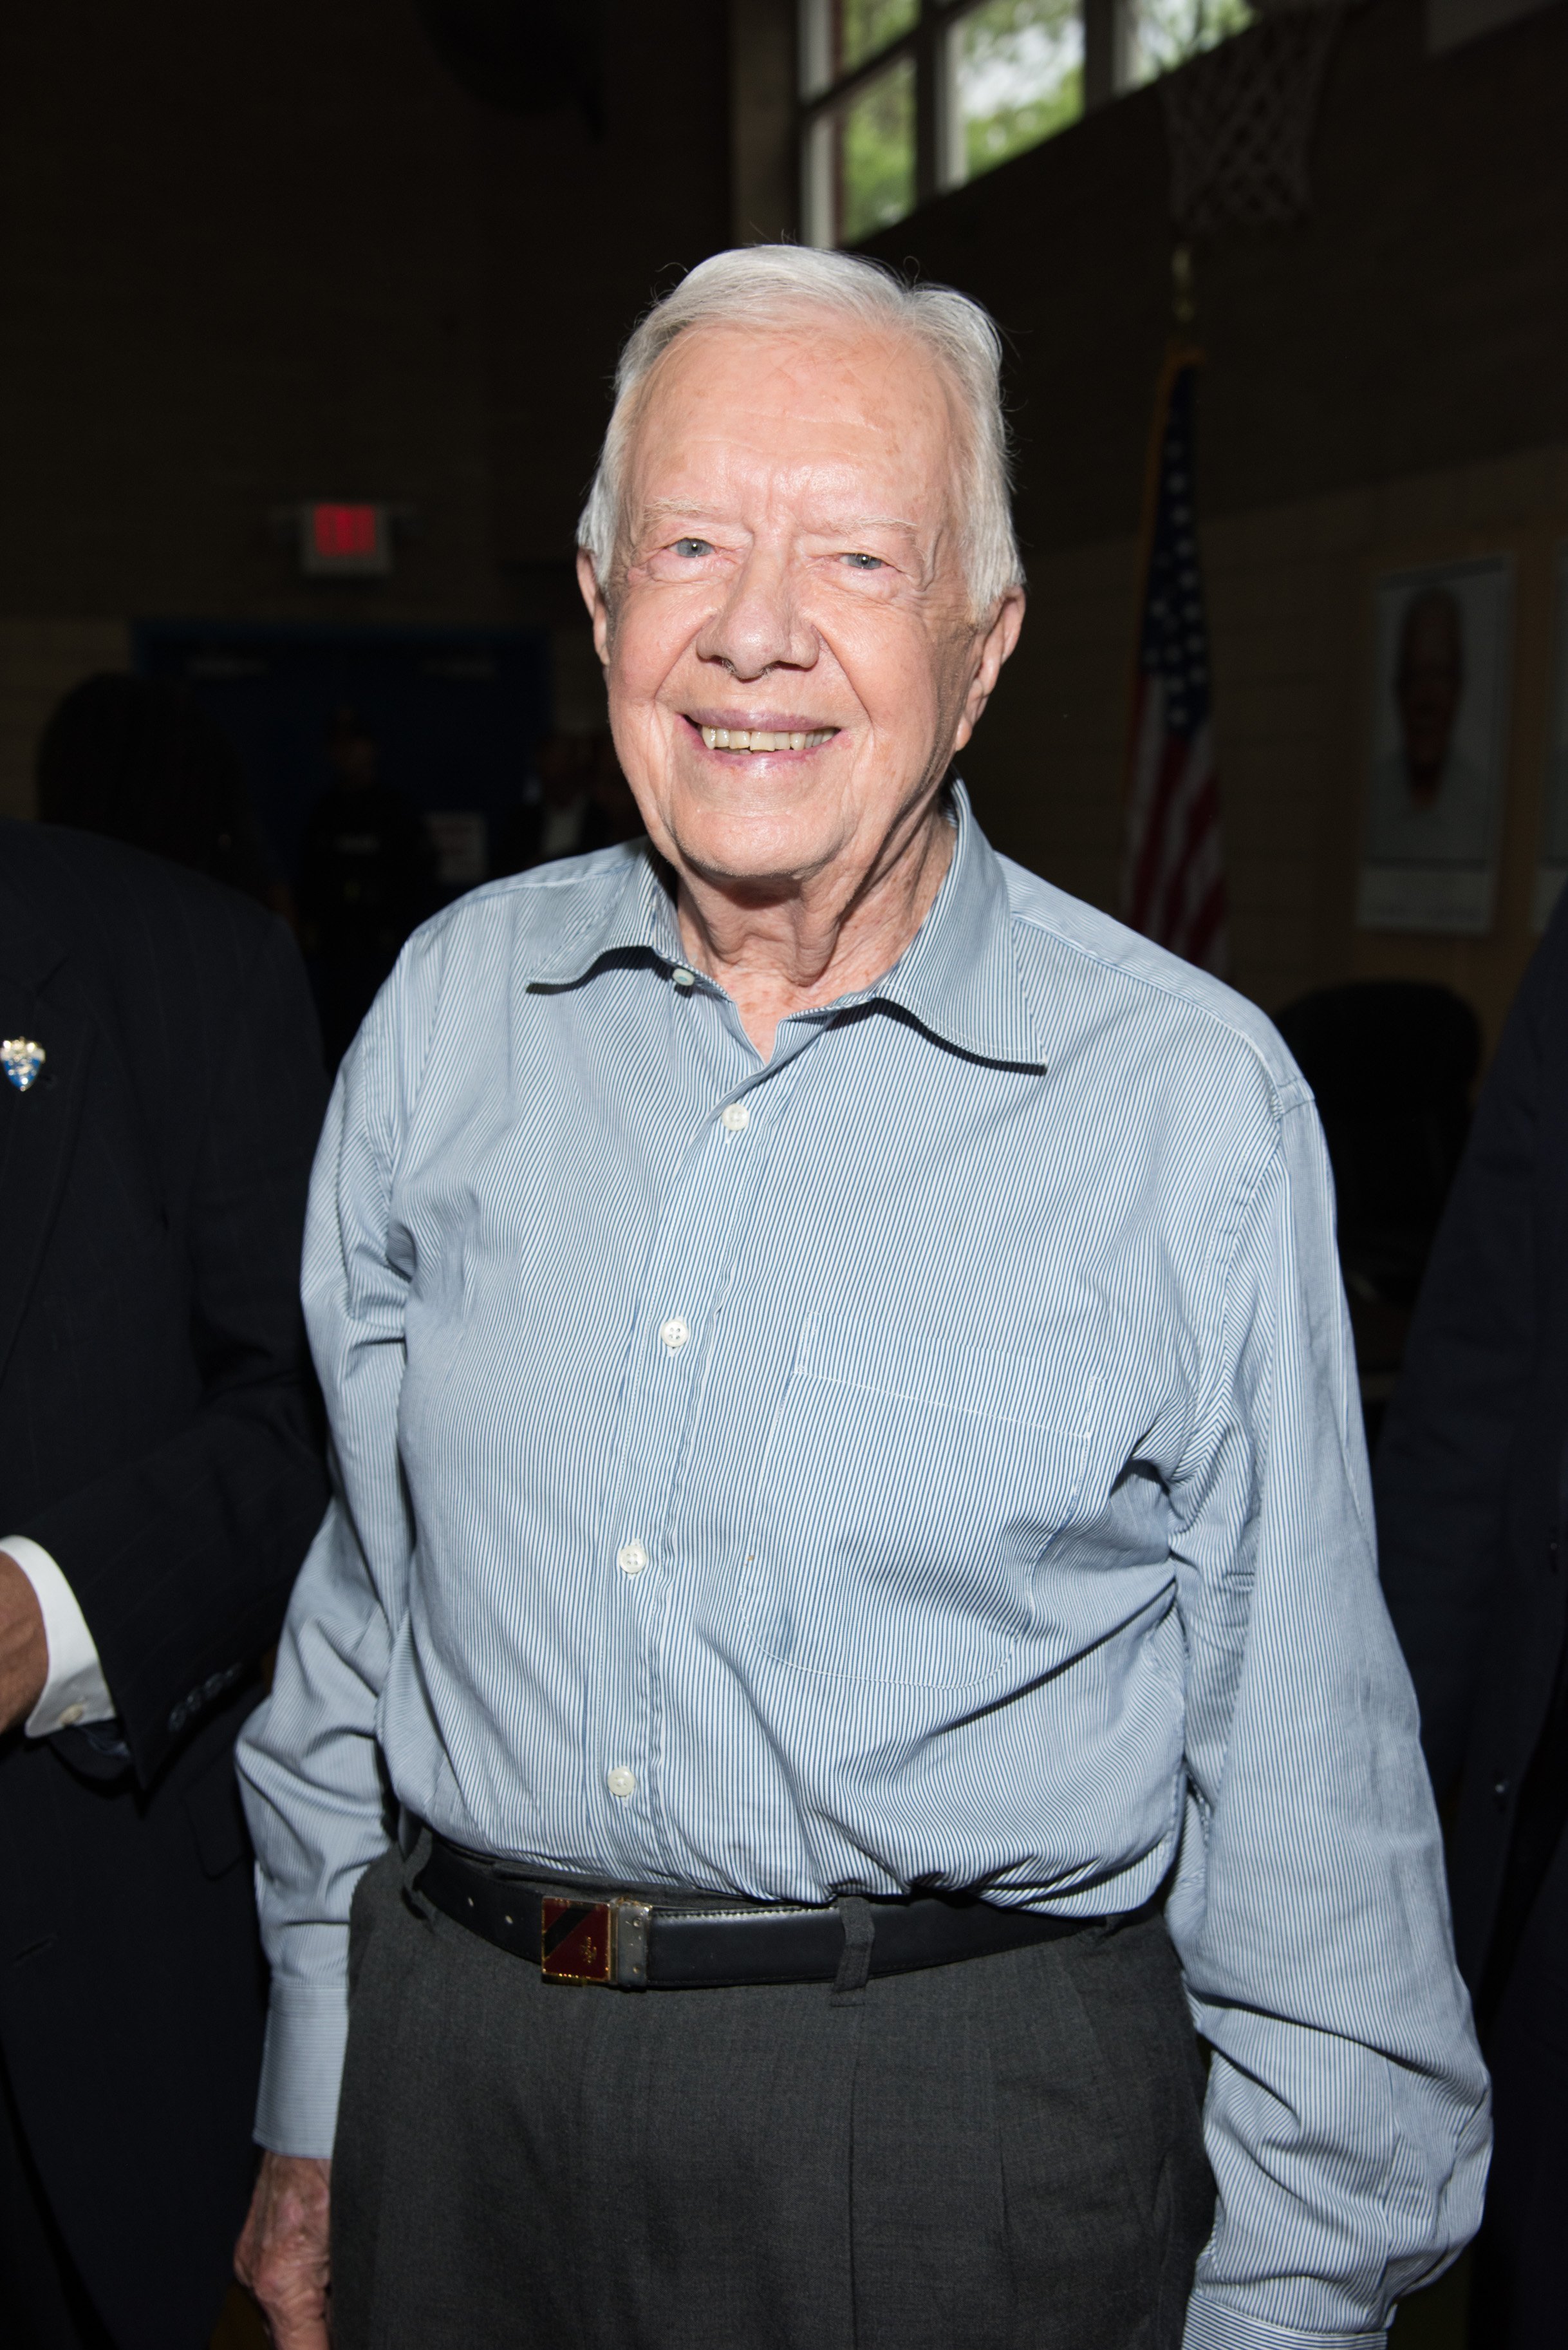 Jimmy Carter signe des exemplaires de "A Full Life Reflections At Ninety" à la librairie Bookends le 8 juillet 2015 à Ridgewood, dans le New Jersey. | Source: Getty Images